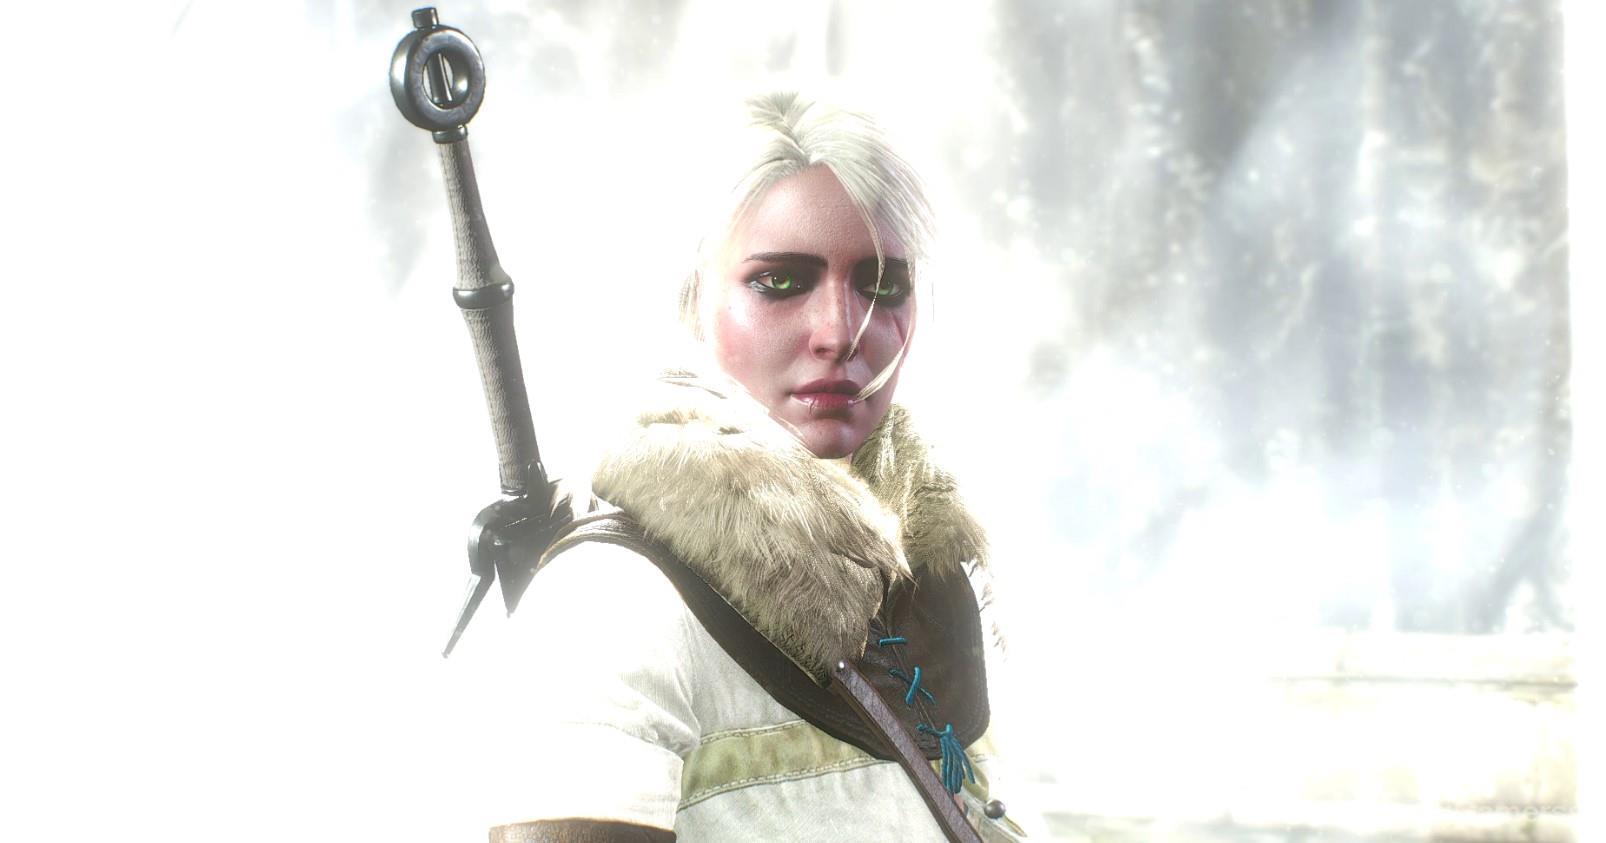 Ciri recalls time spent with Geralt